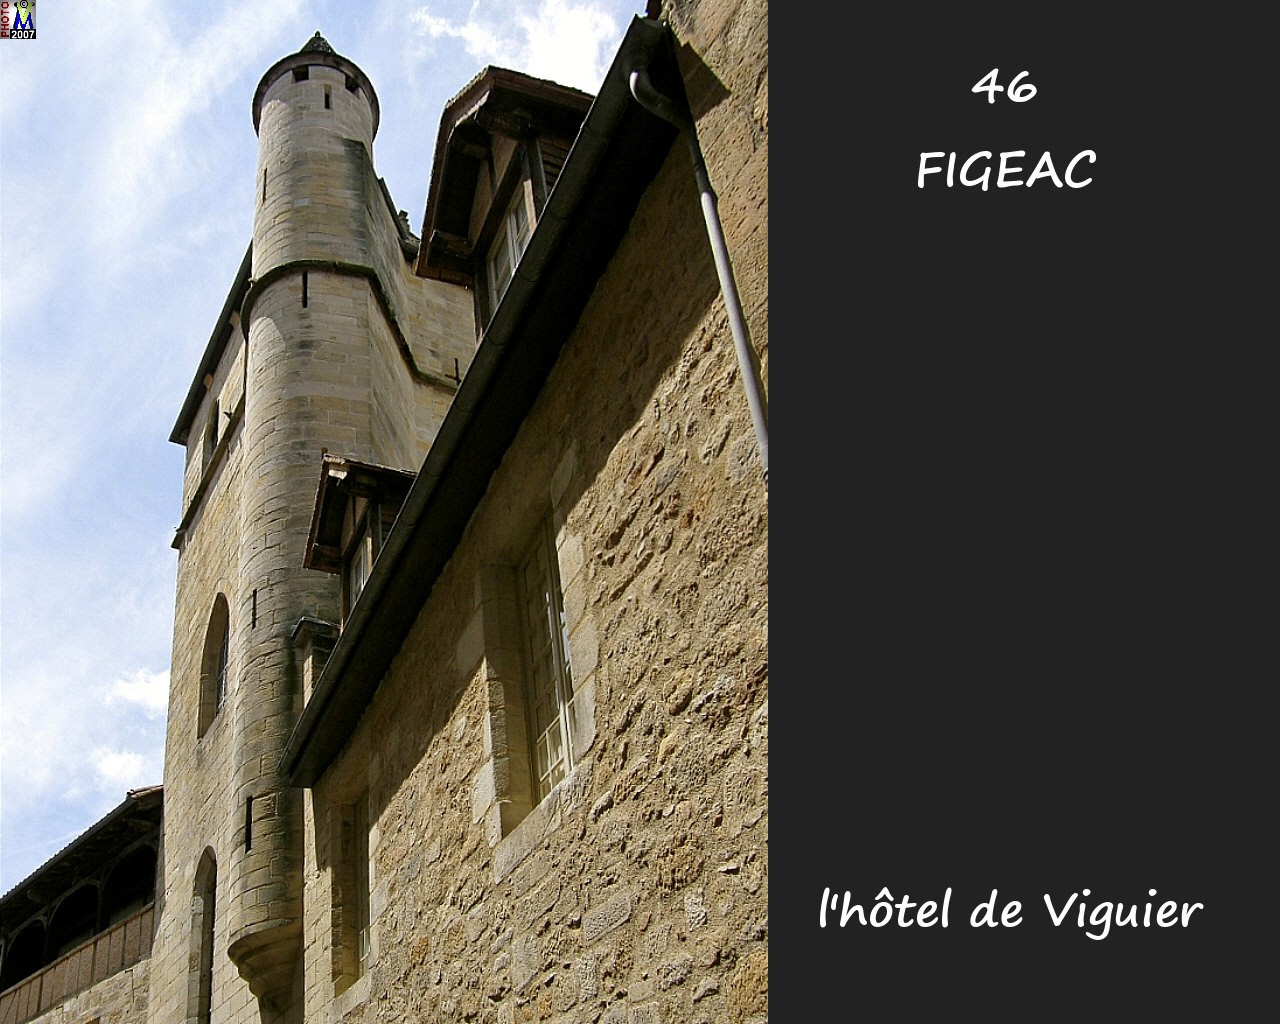 46FIGEAC_H-Viguier_101.jpg